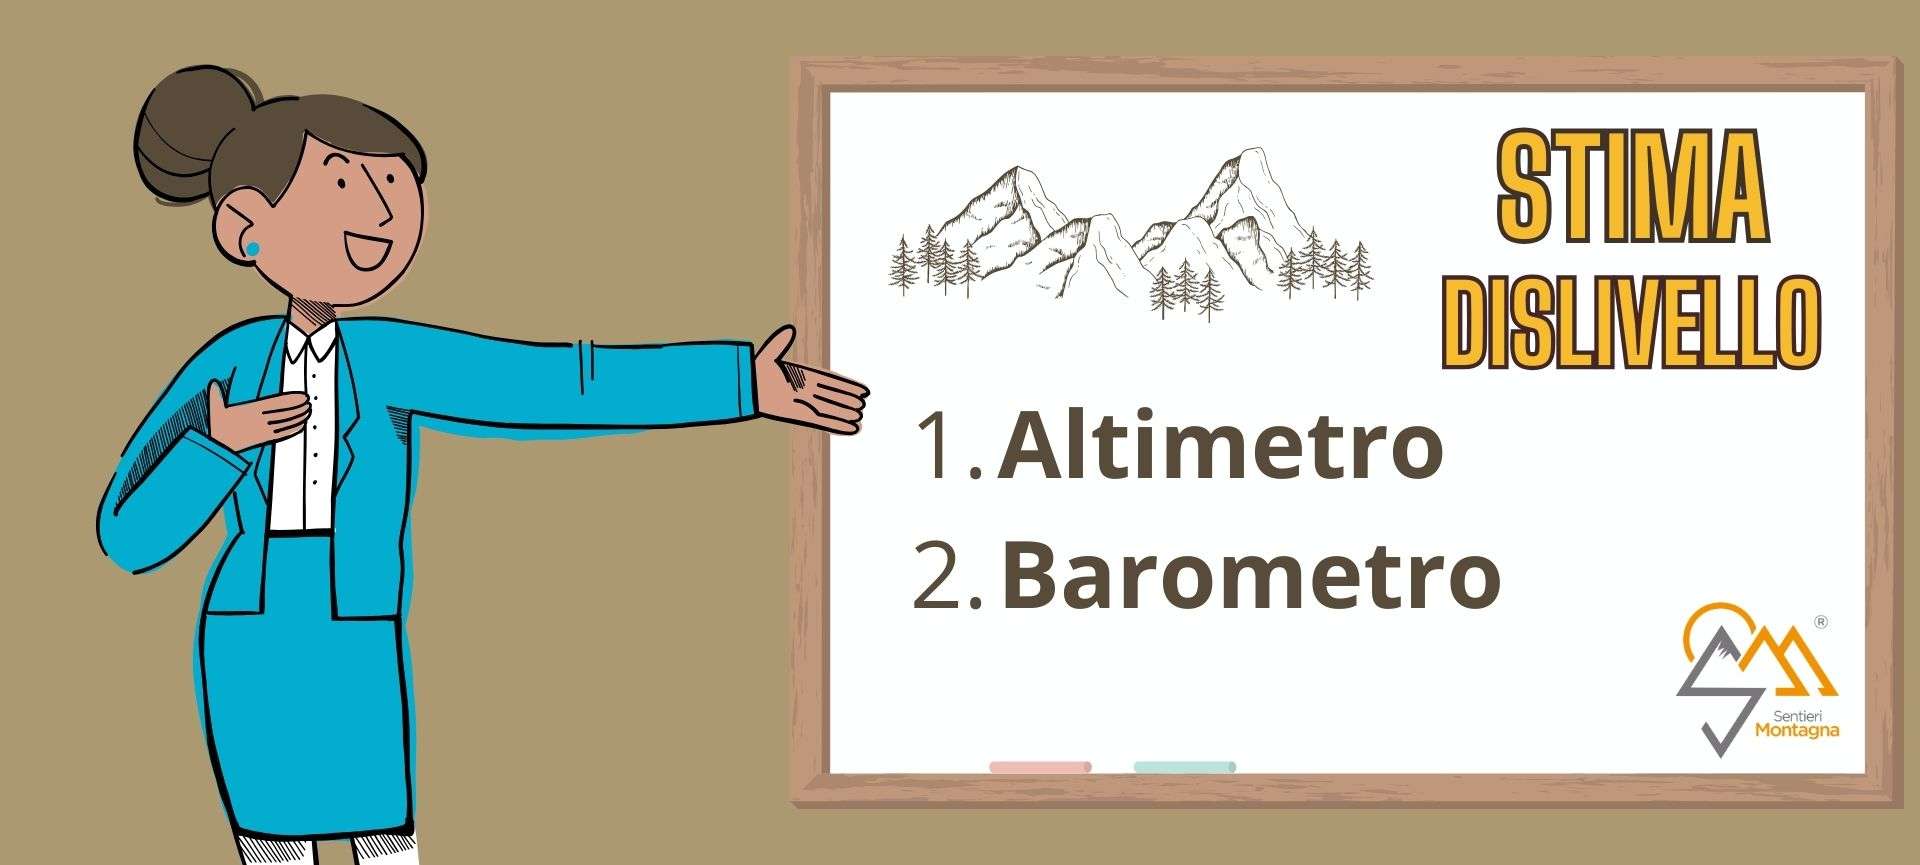 Distanza e Dislivello in Montagna - Altimetro e Barometro